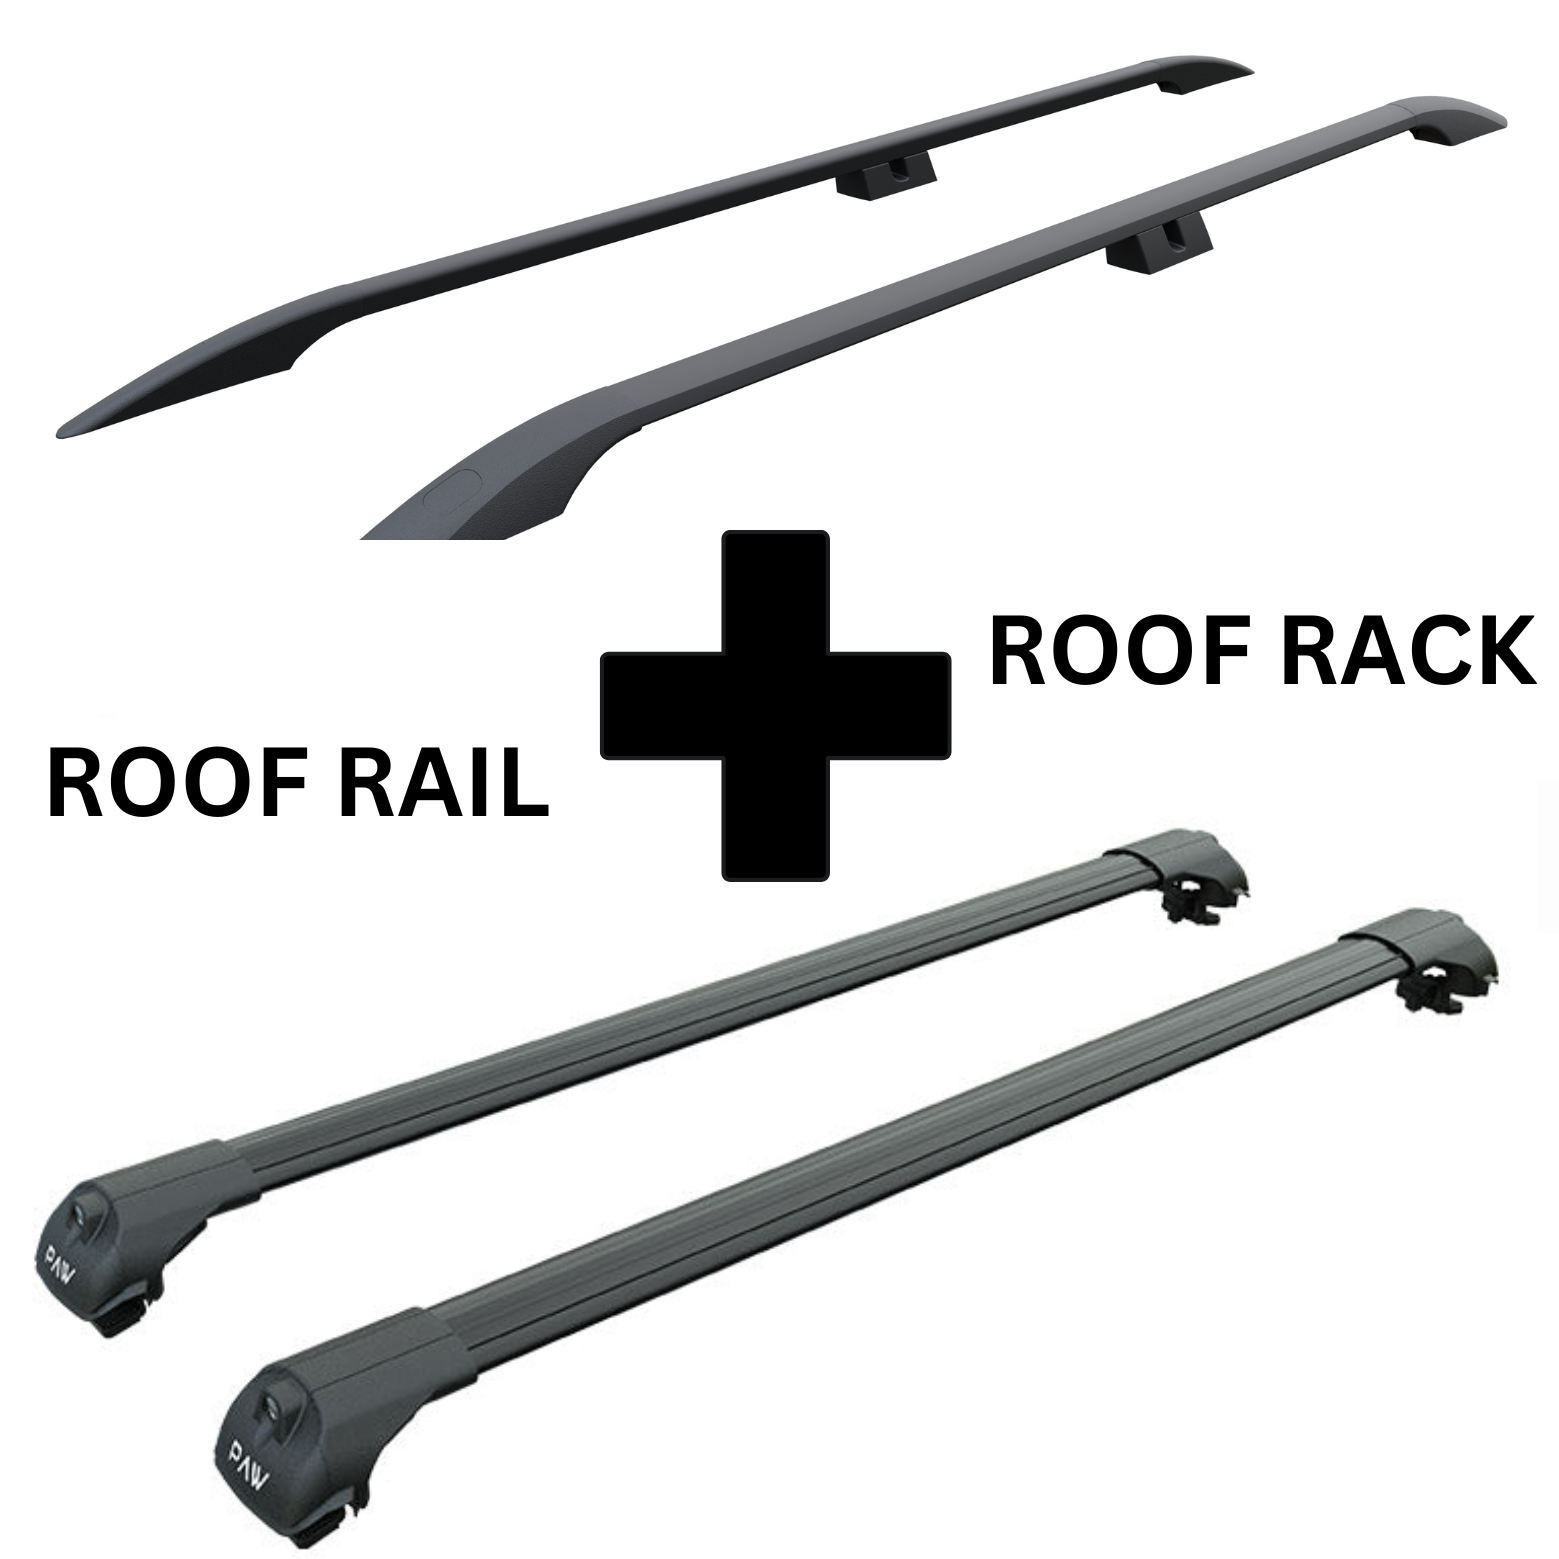 For Volkswagen Transporter (T5) SWB 2003-15 Roof Rails and Roof Rack Cross Bar Alu Black